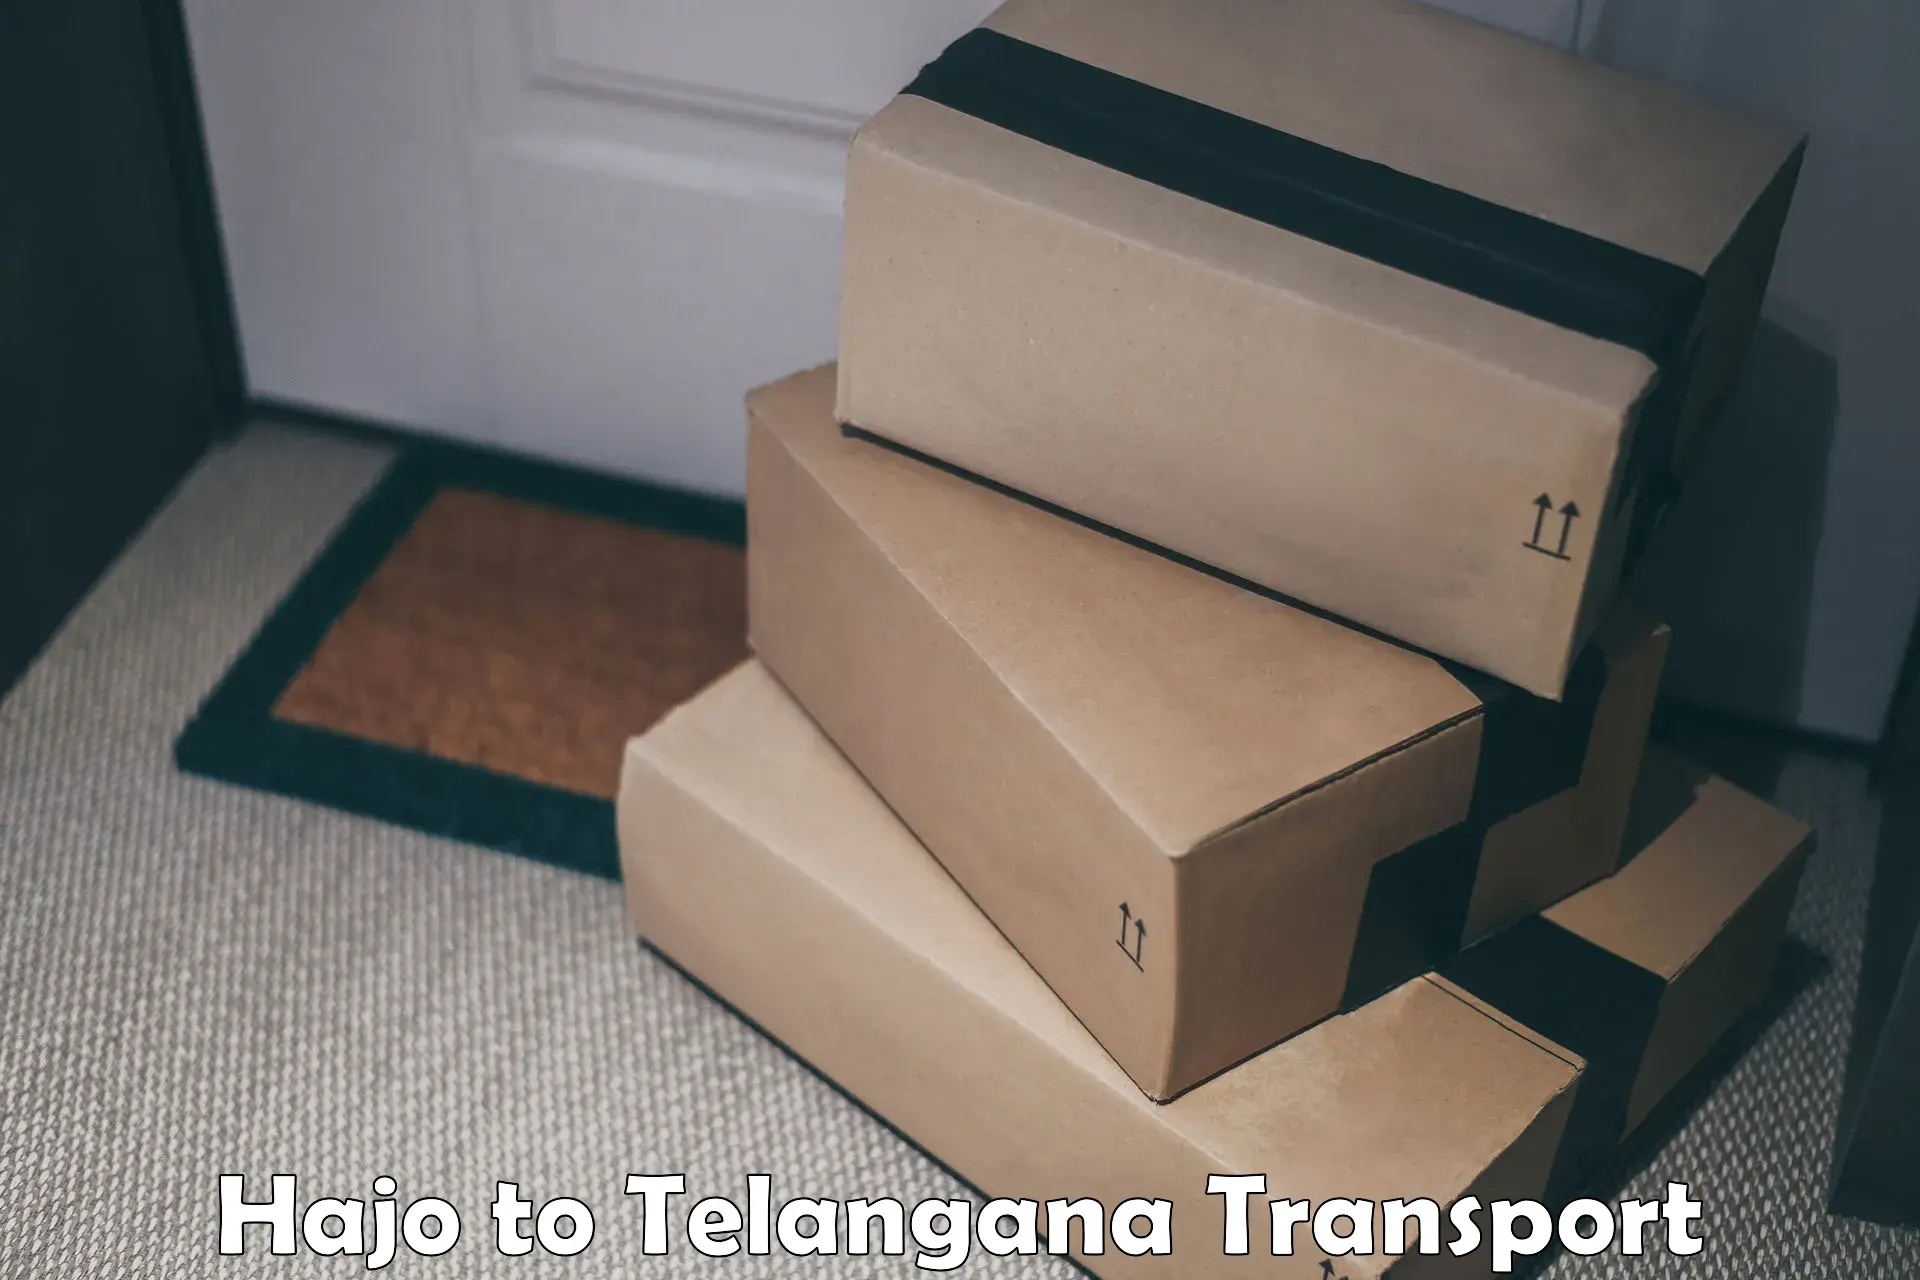 Transport shared services Hajo to Telangana